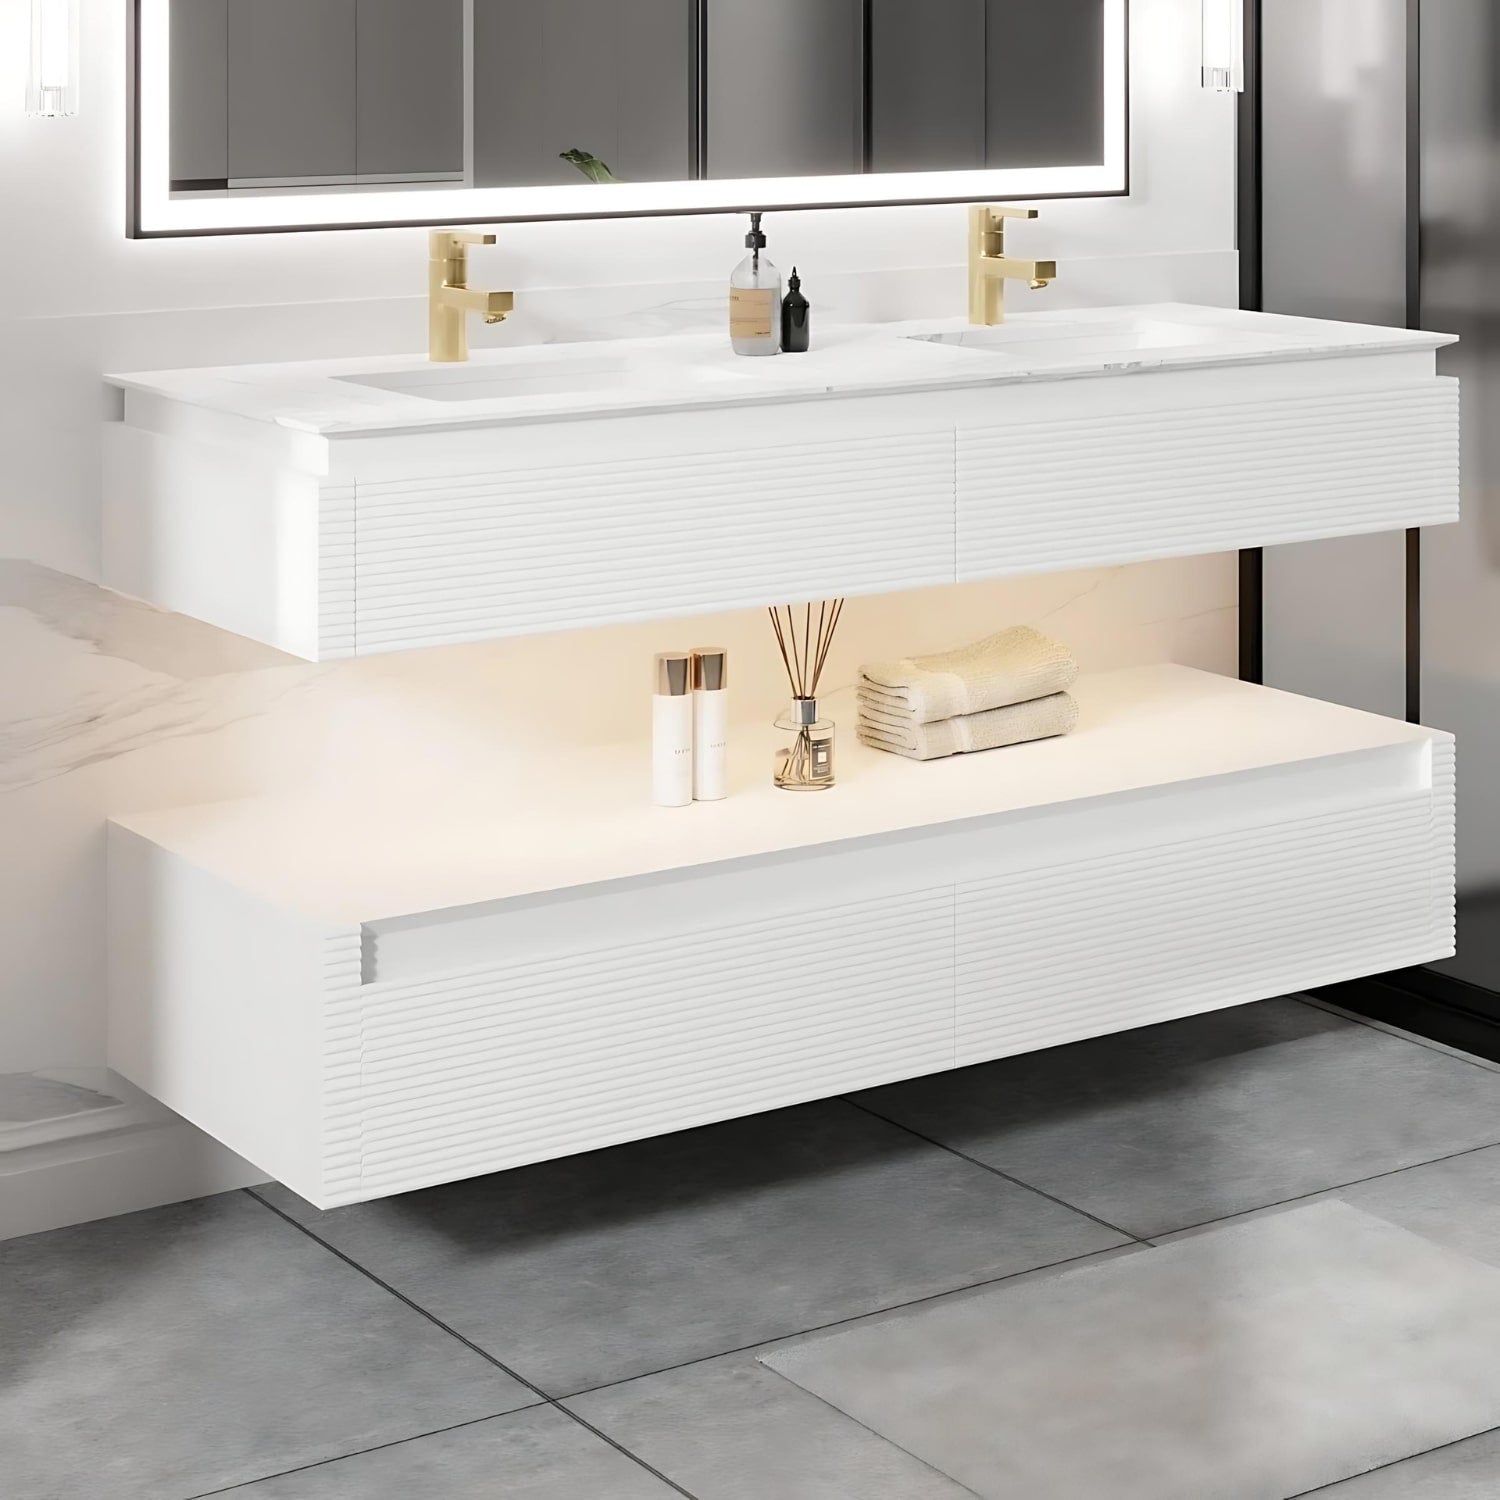 We sell top of the line solid oak bathroom vanities.  Solid Wood Vanities are premier high quality vanities.